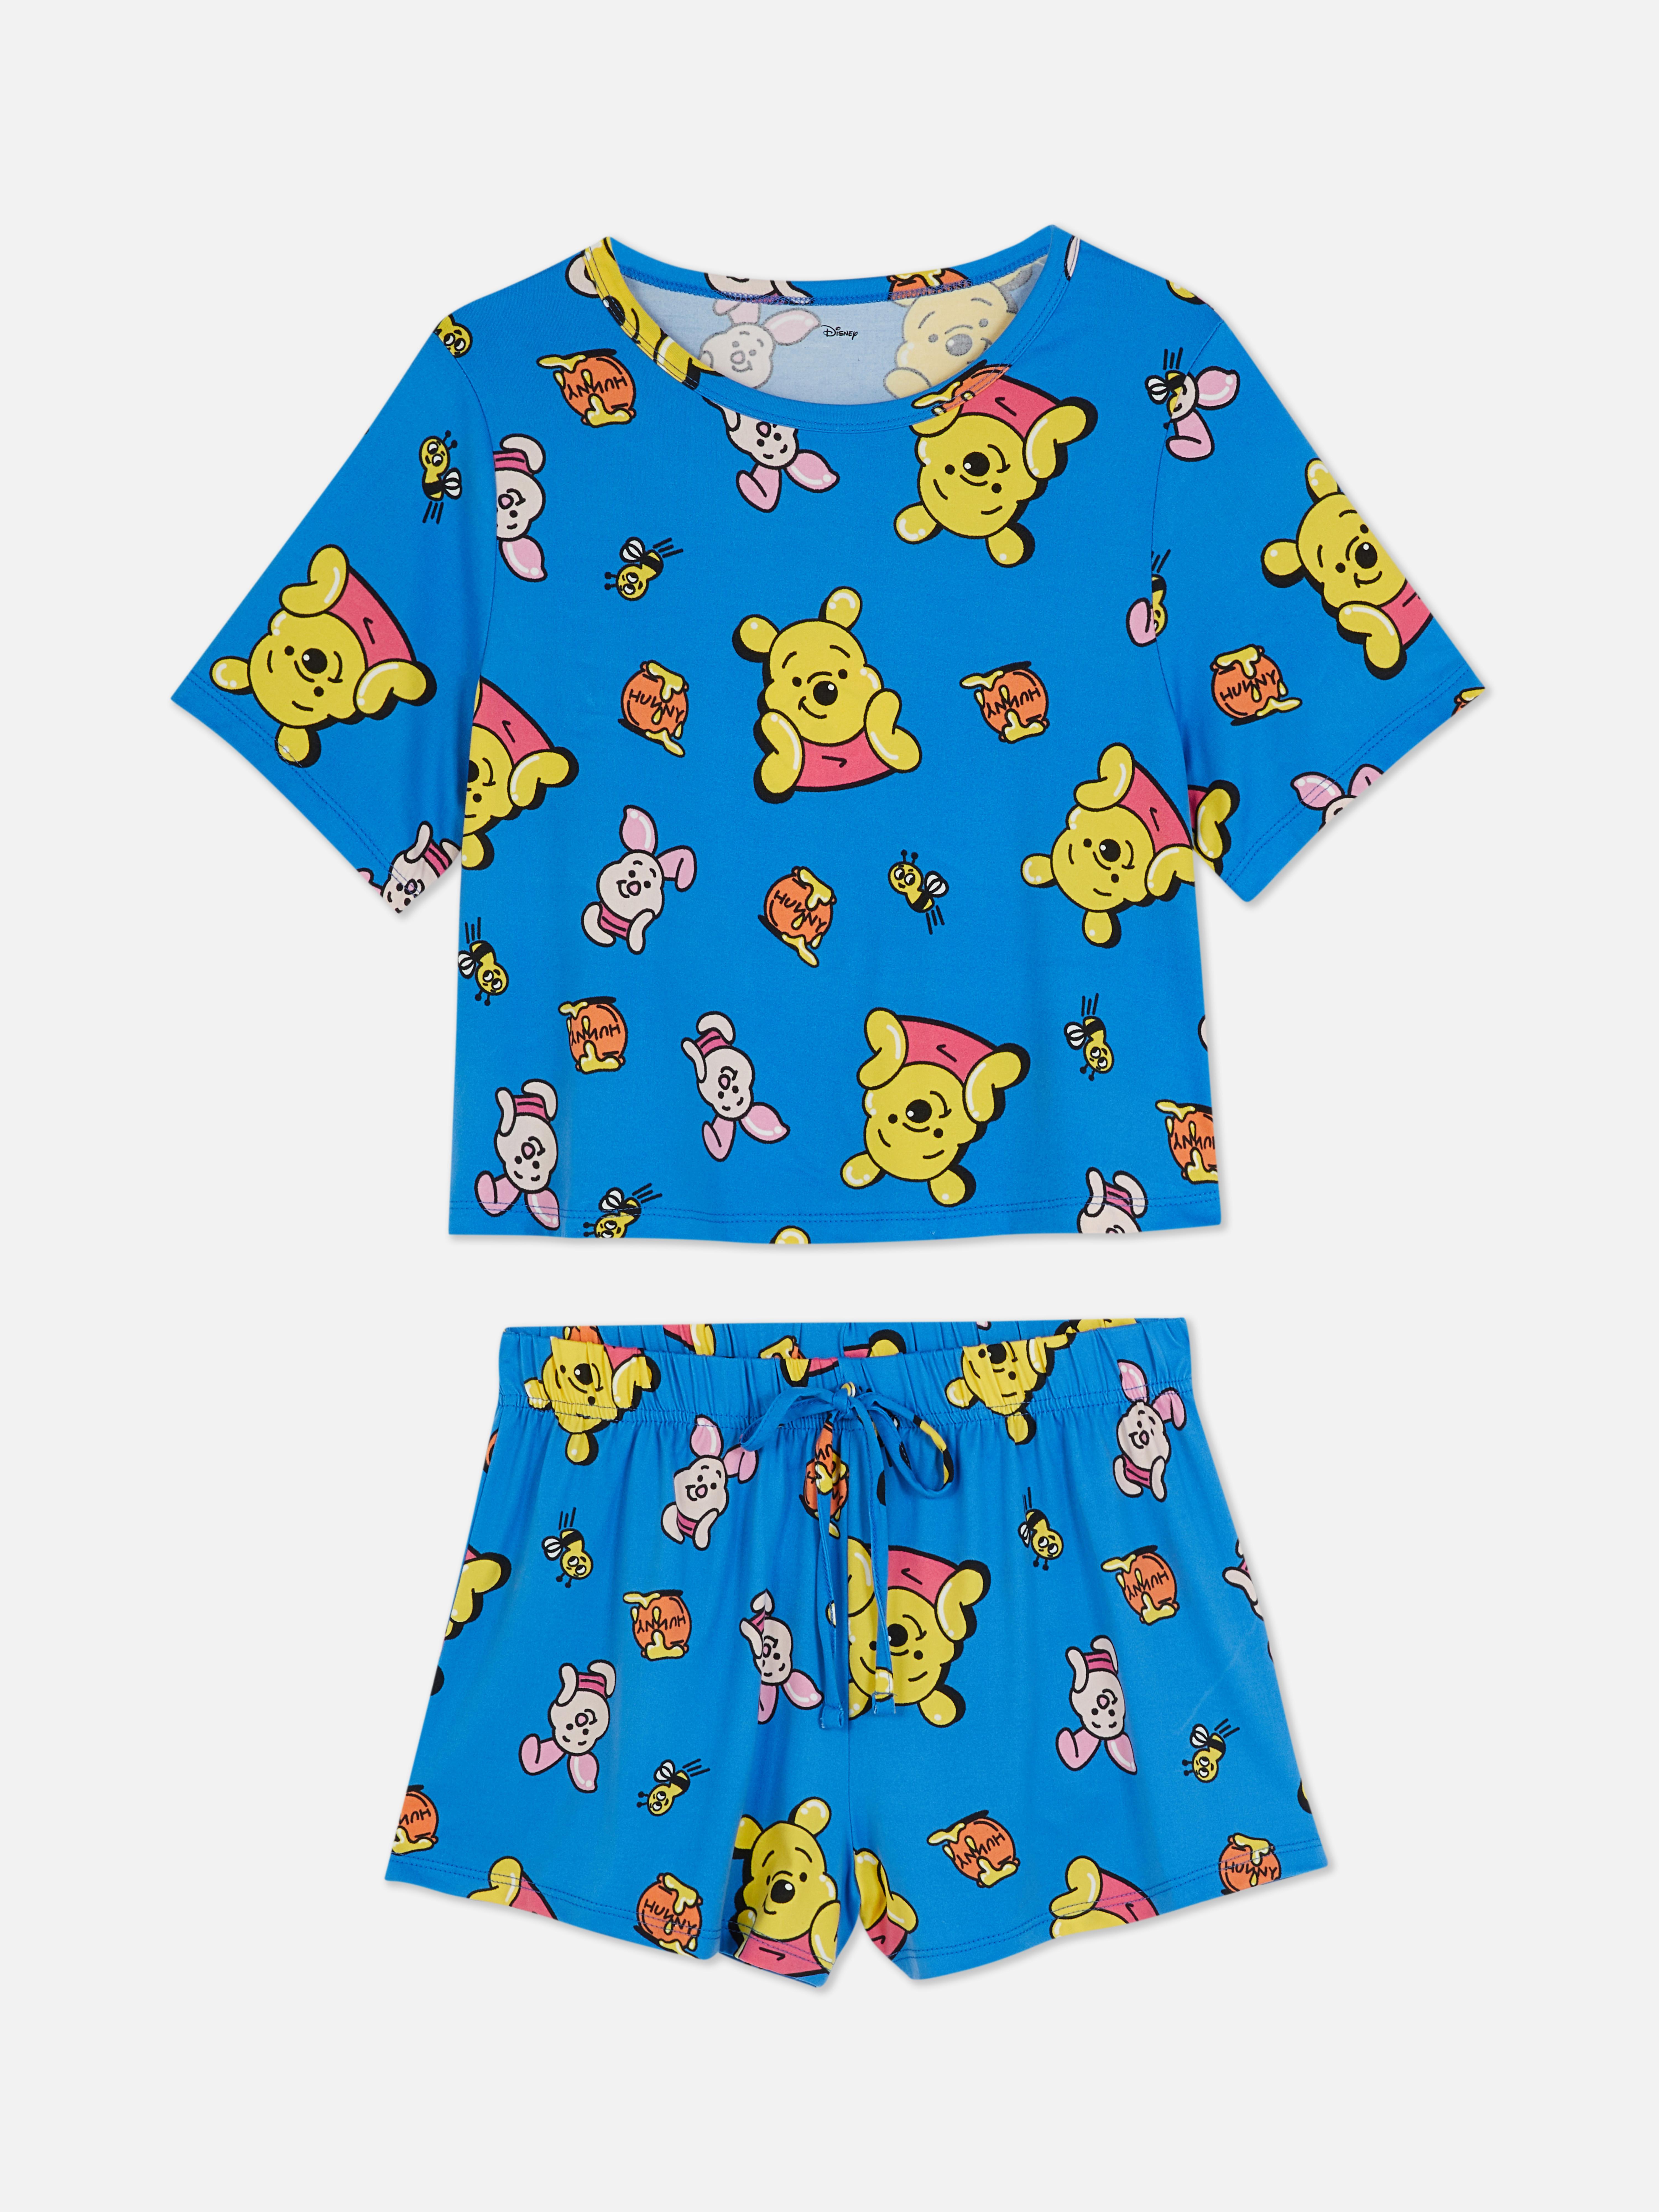 Disney Character Shorts Pajamas |